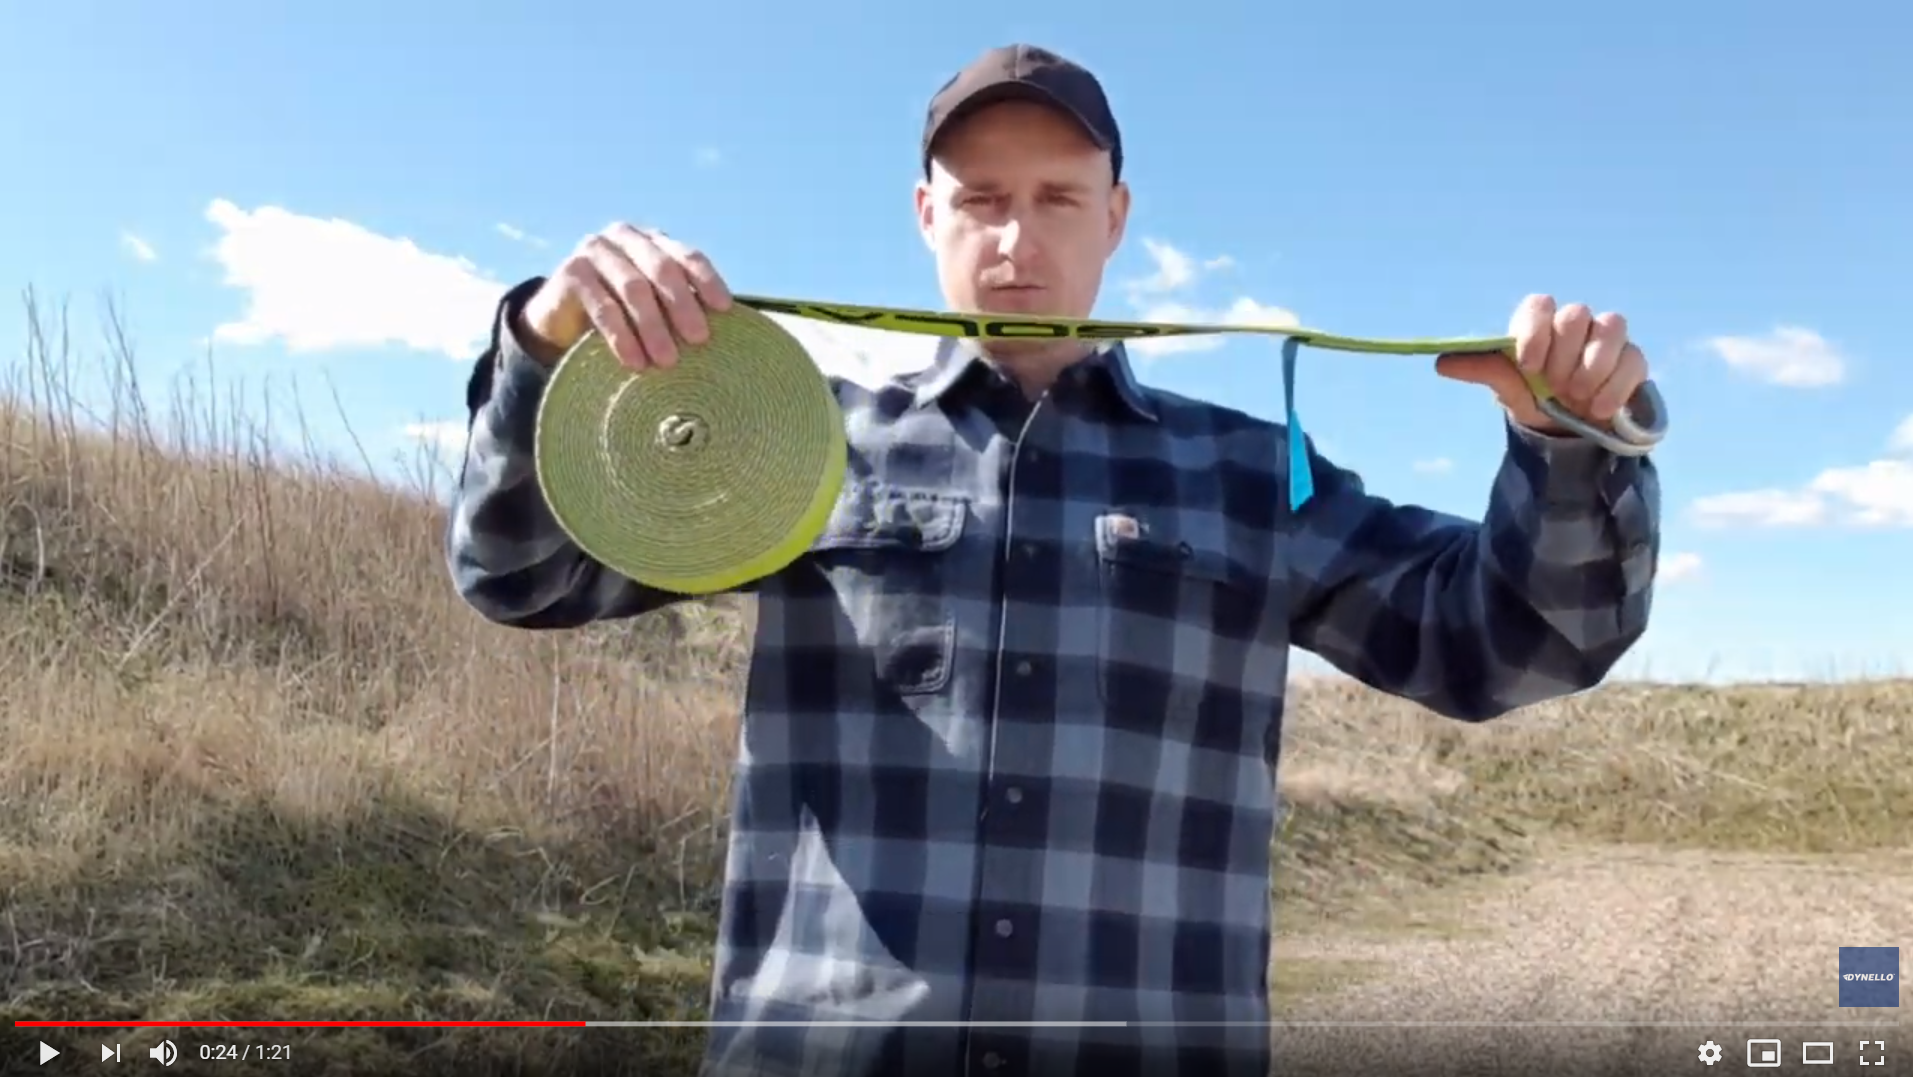 Ergonomic strap throw technique (video)